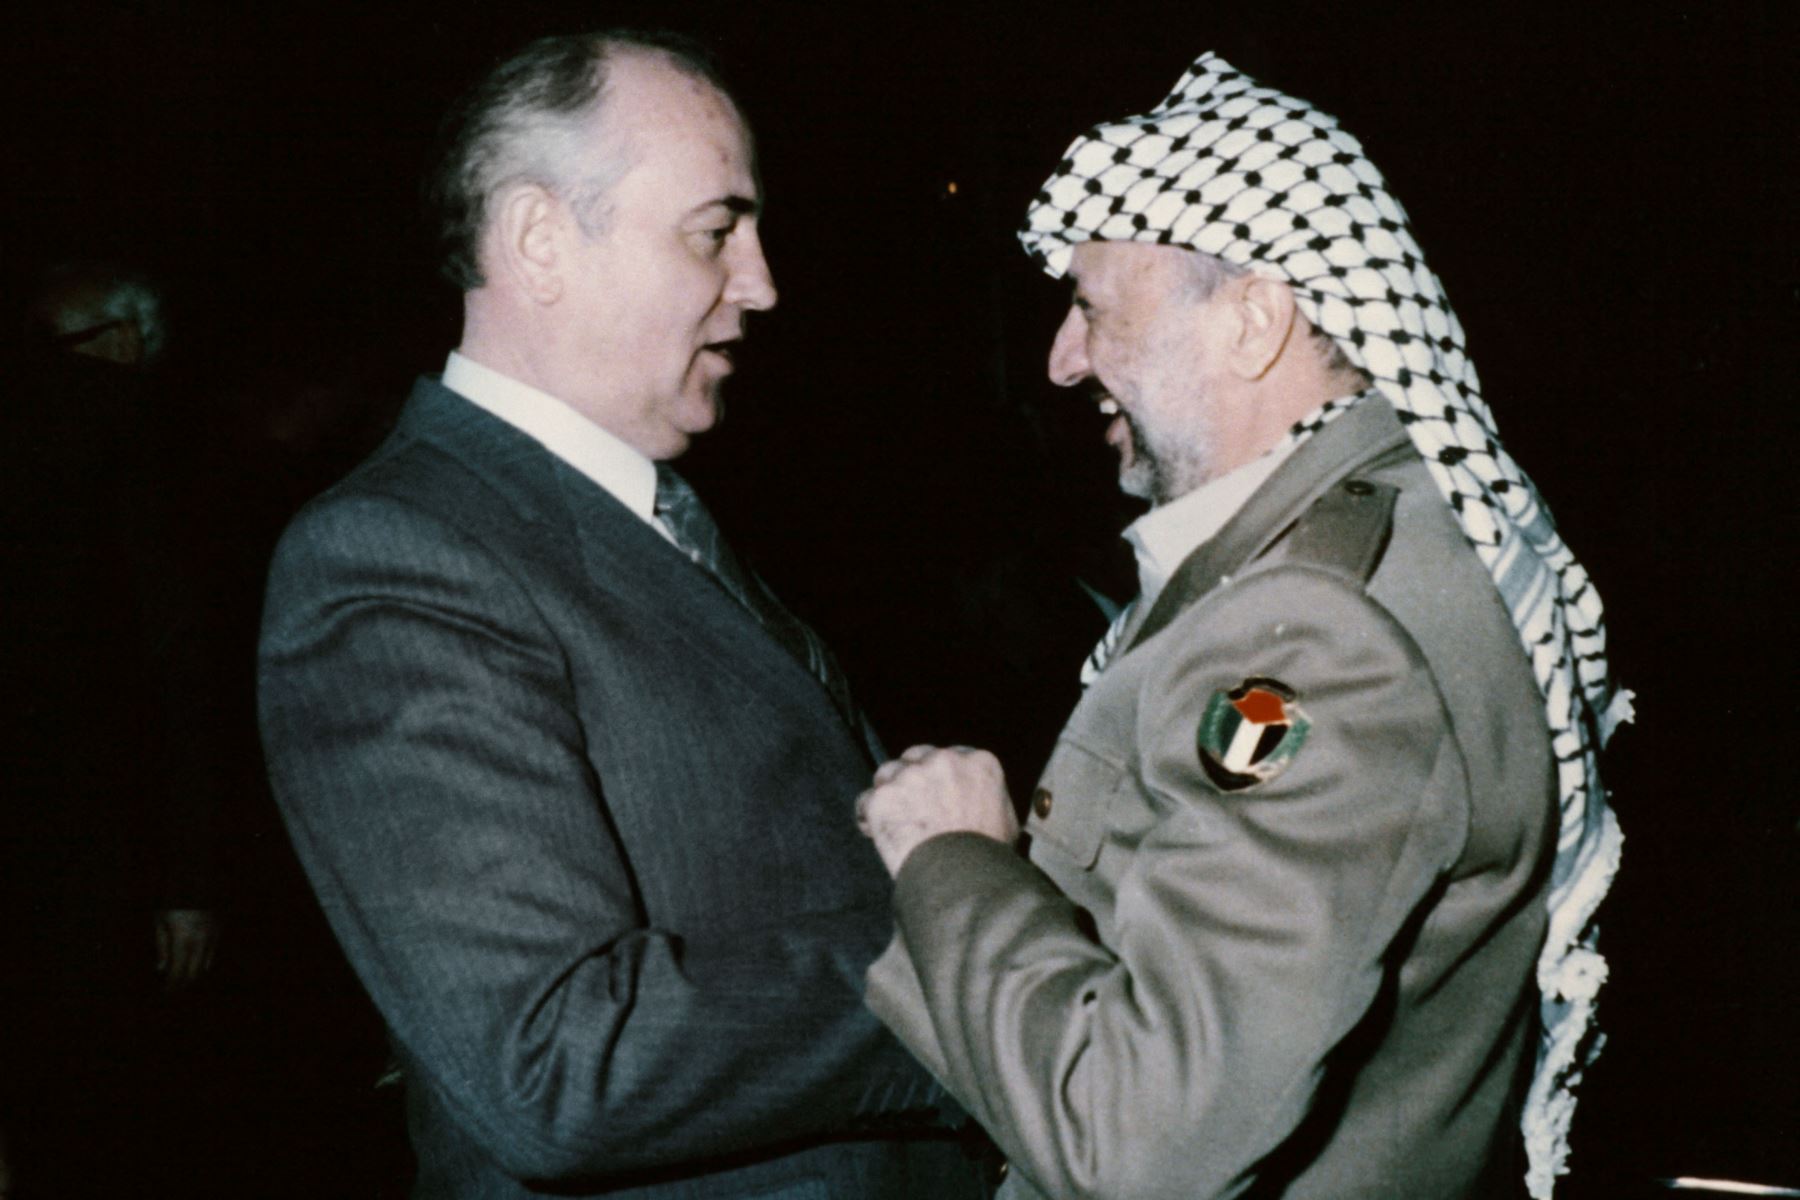 Mikhail Gorbachev, Secretario General del Comité Central del PCUS, se da la mano con Yasser Arafat, Presidente de la Organización para la Liberación de Palestina (OLP), en Berlín Oriental el 17 de abril de 1986 durante el 11º Congreso del Partido de Unidad Socialista de Alemania Oriental.
Foto: AFP